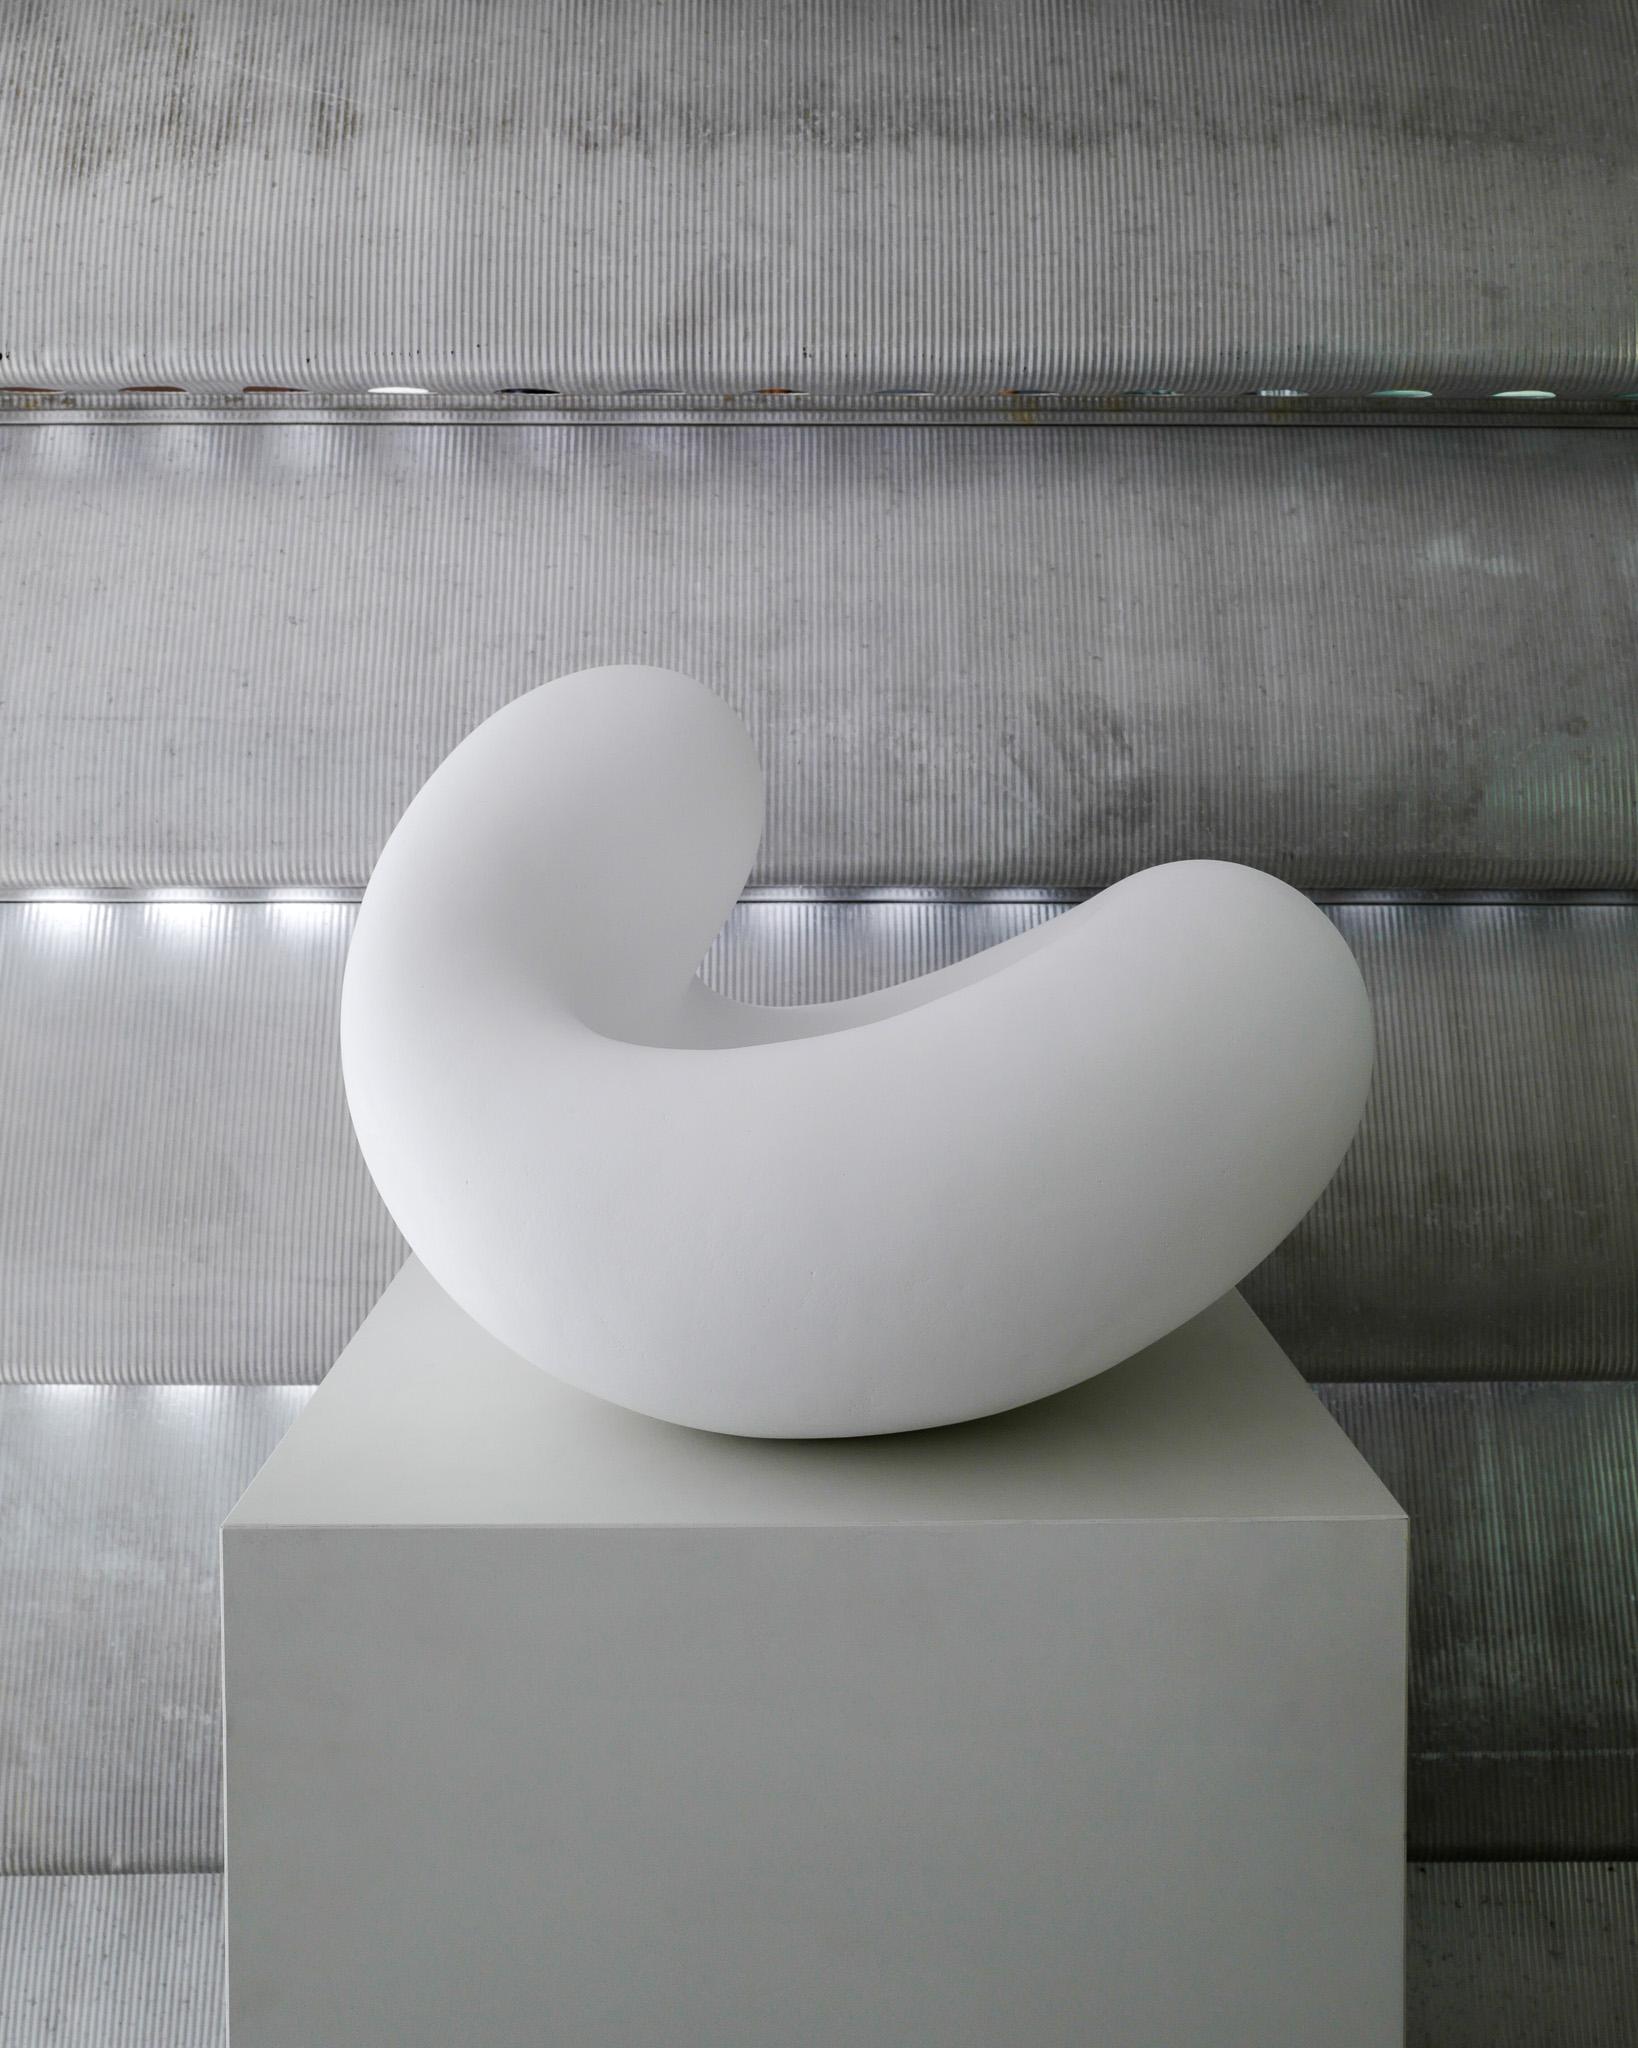 Très rare et unique sculpture contemporaine de forme libre en grès blanc de kaolin-engobe de l'artiste suédoise bien connue Eva Hild. Produit dans son propre studio dans les années 2000 et récemment restauré par ses soins donc une mise à jour de la